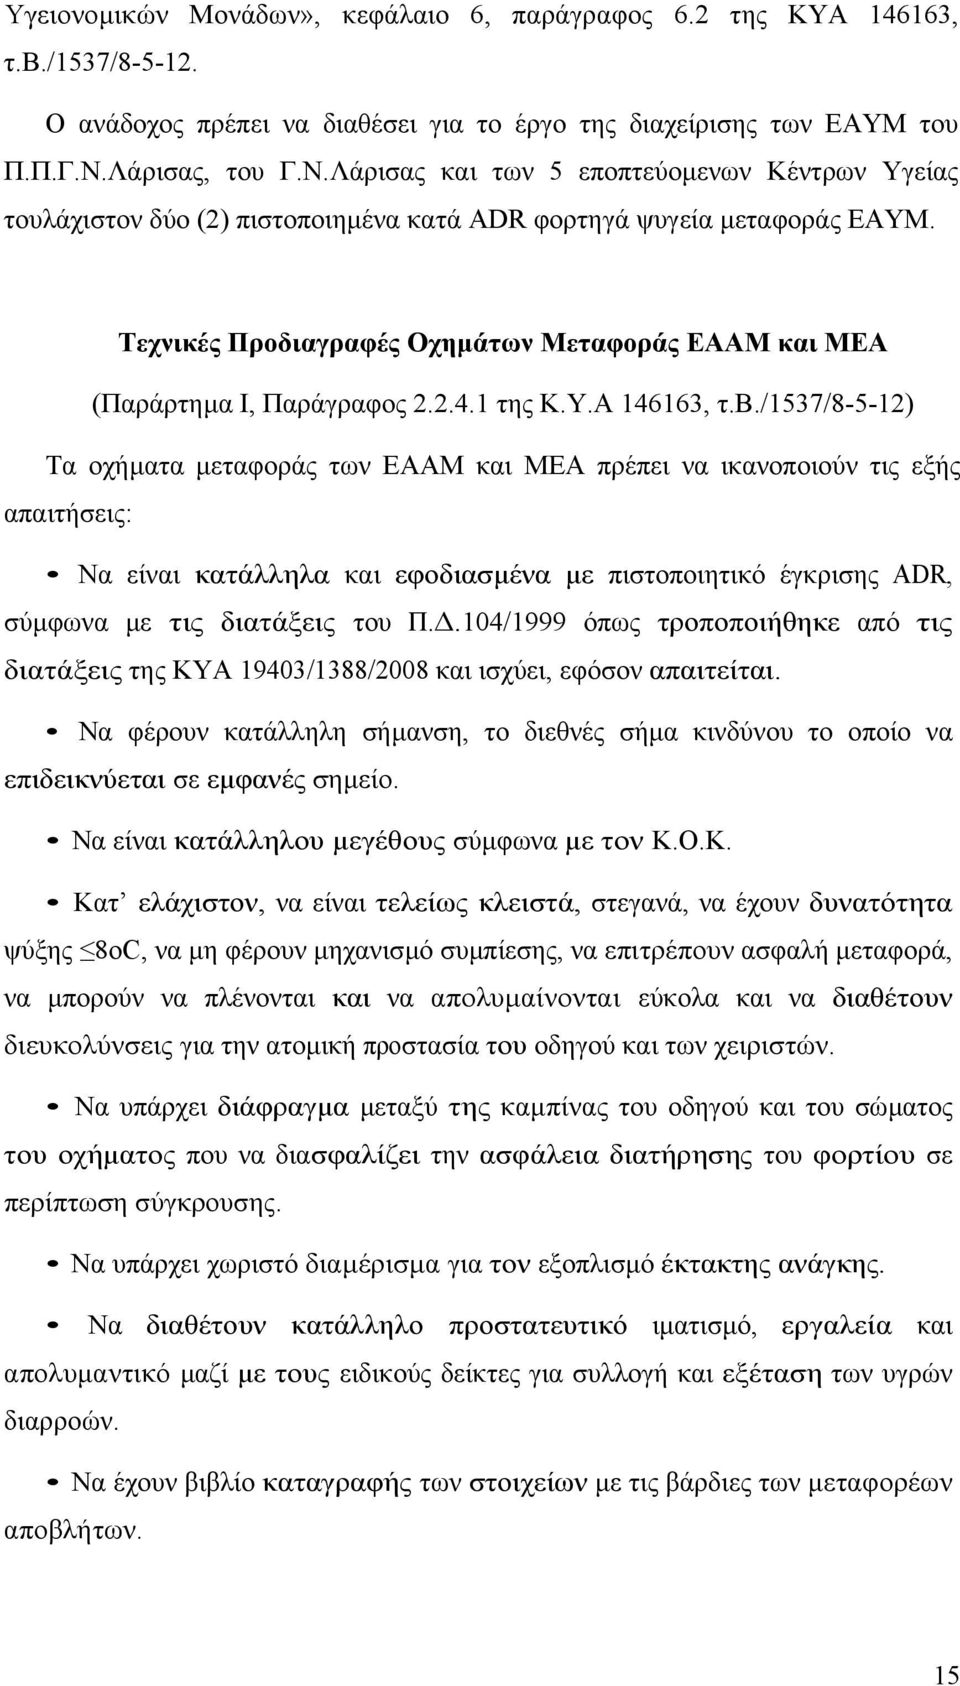 Τεχνικές Προδιαγραφές Οχηµάτων Μεταφοράς ΕΑΑΜ και ΜΕΑ (Παράρτηµα Ι, Παράγραφος 2.2.4.1 της Κ.Υ.Α 146163, τ.β.